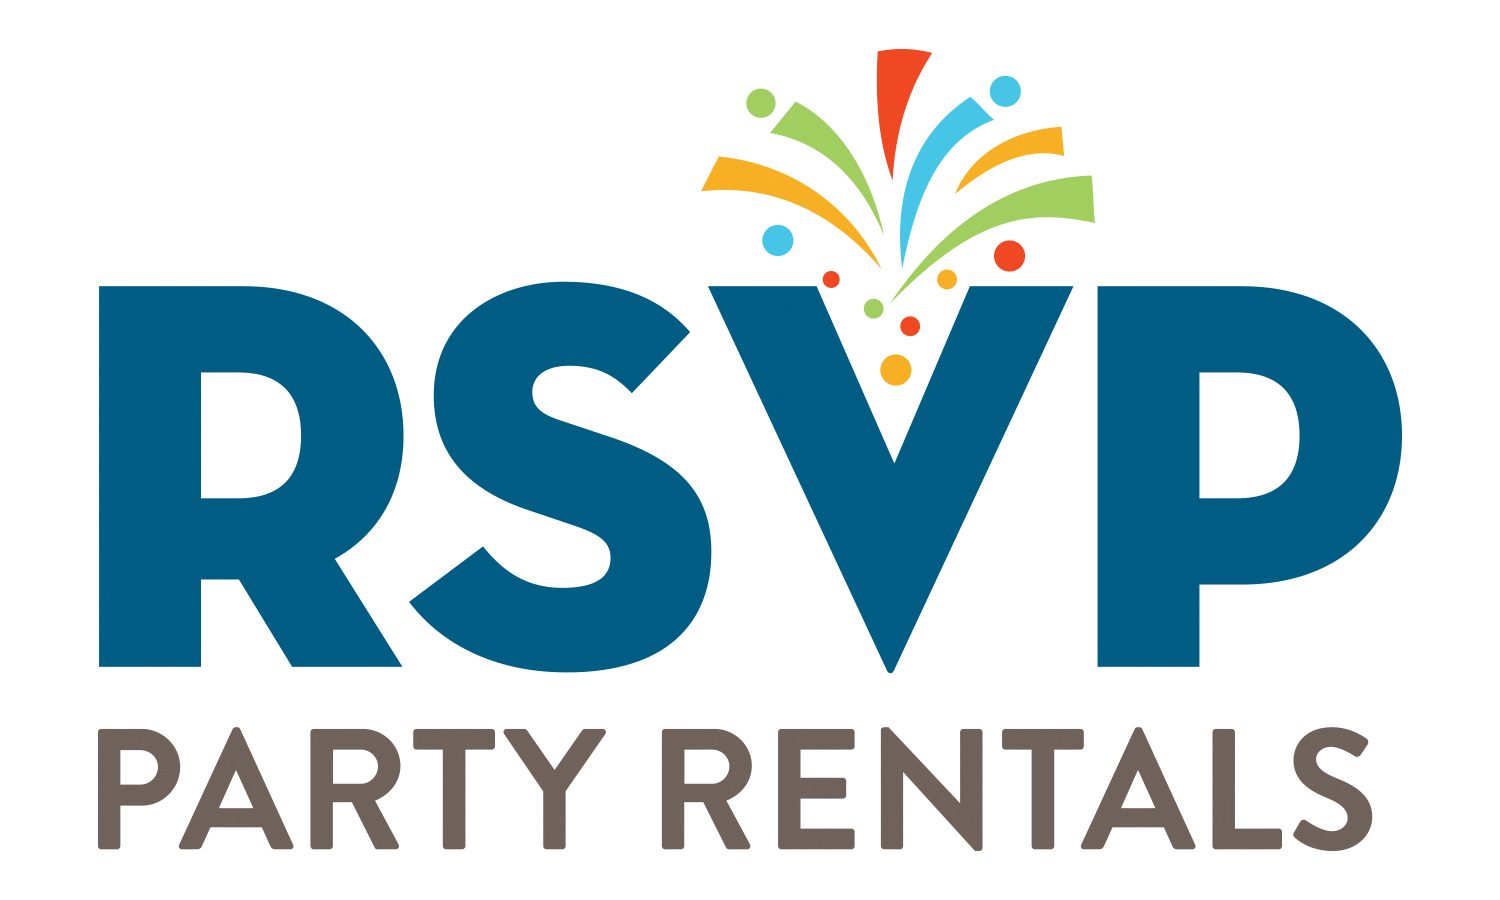 RSVP Party Rentals